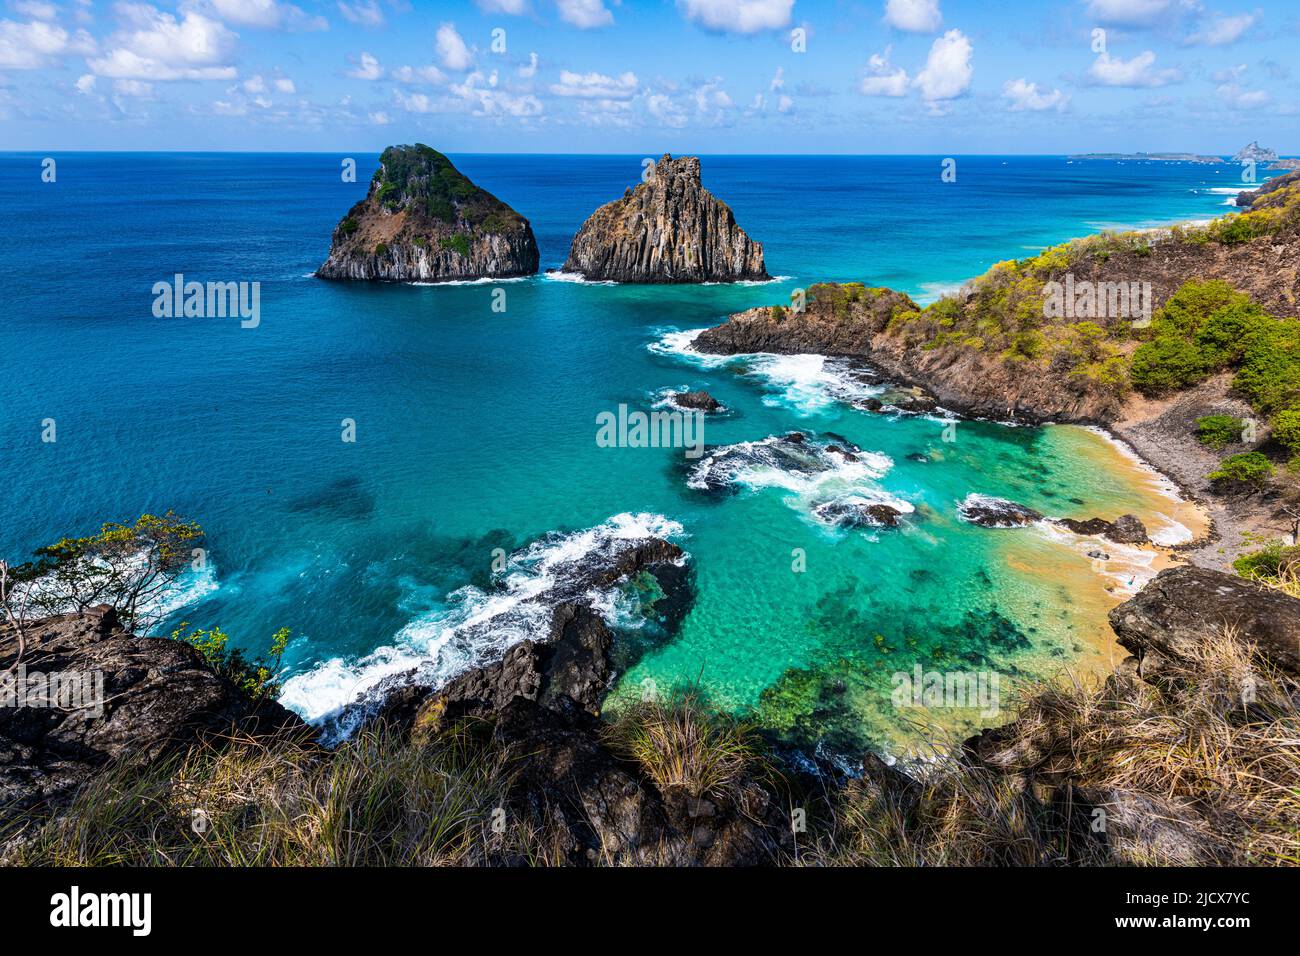 Eau turquoise autour des rochers des deux Frères, Fernando de Noronha, site classé au patrimoine mondial de l'UNESCO, Brésil, Amérique du Sud Banque D'Images